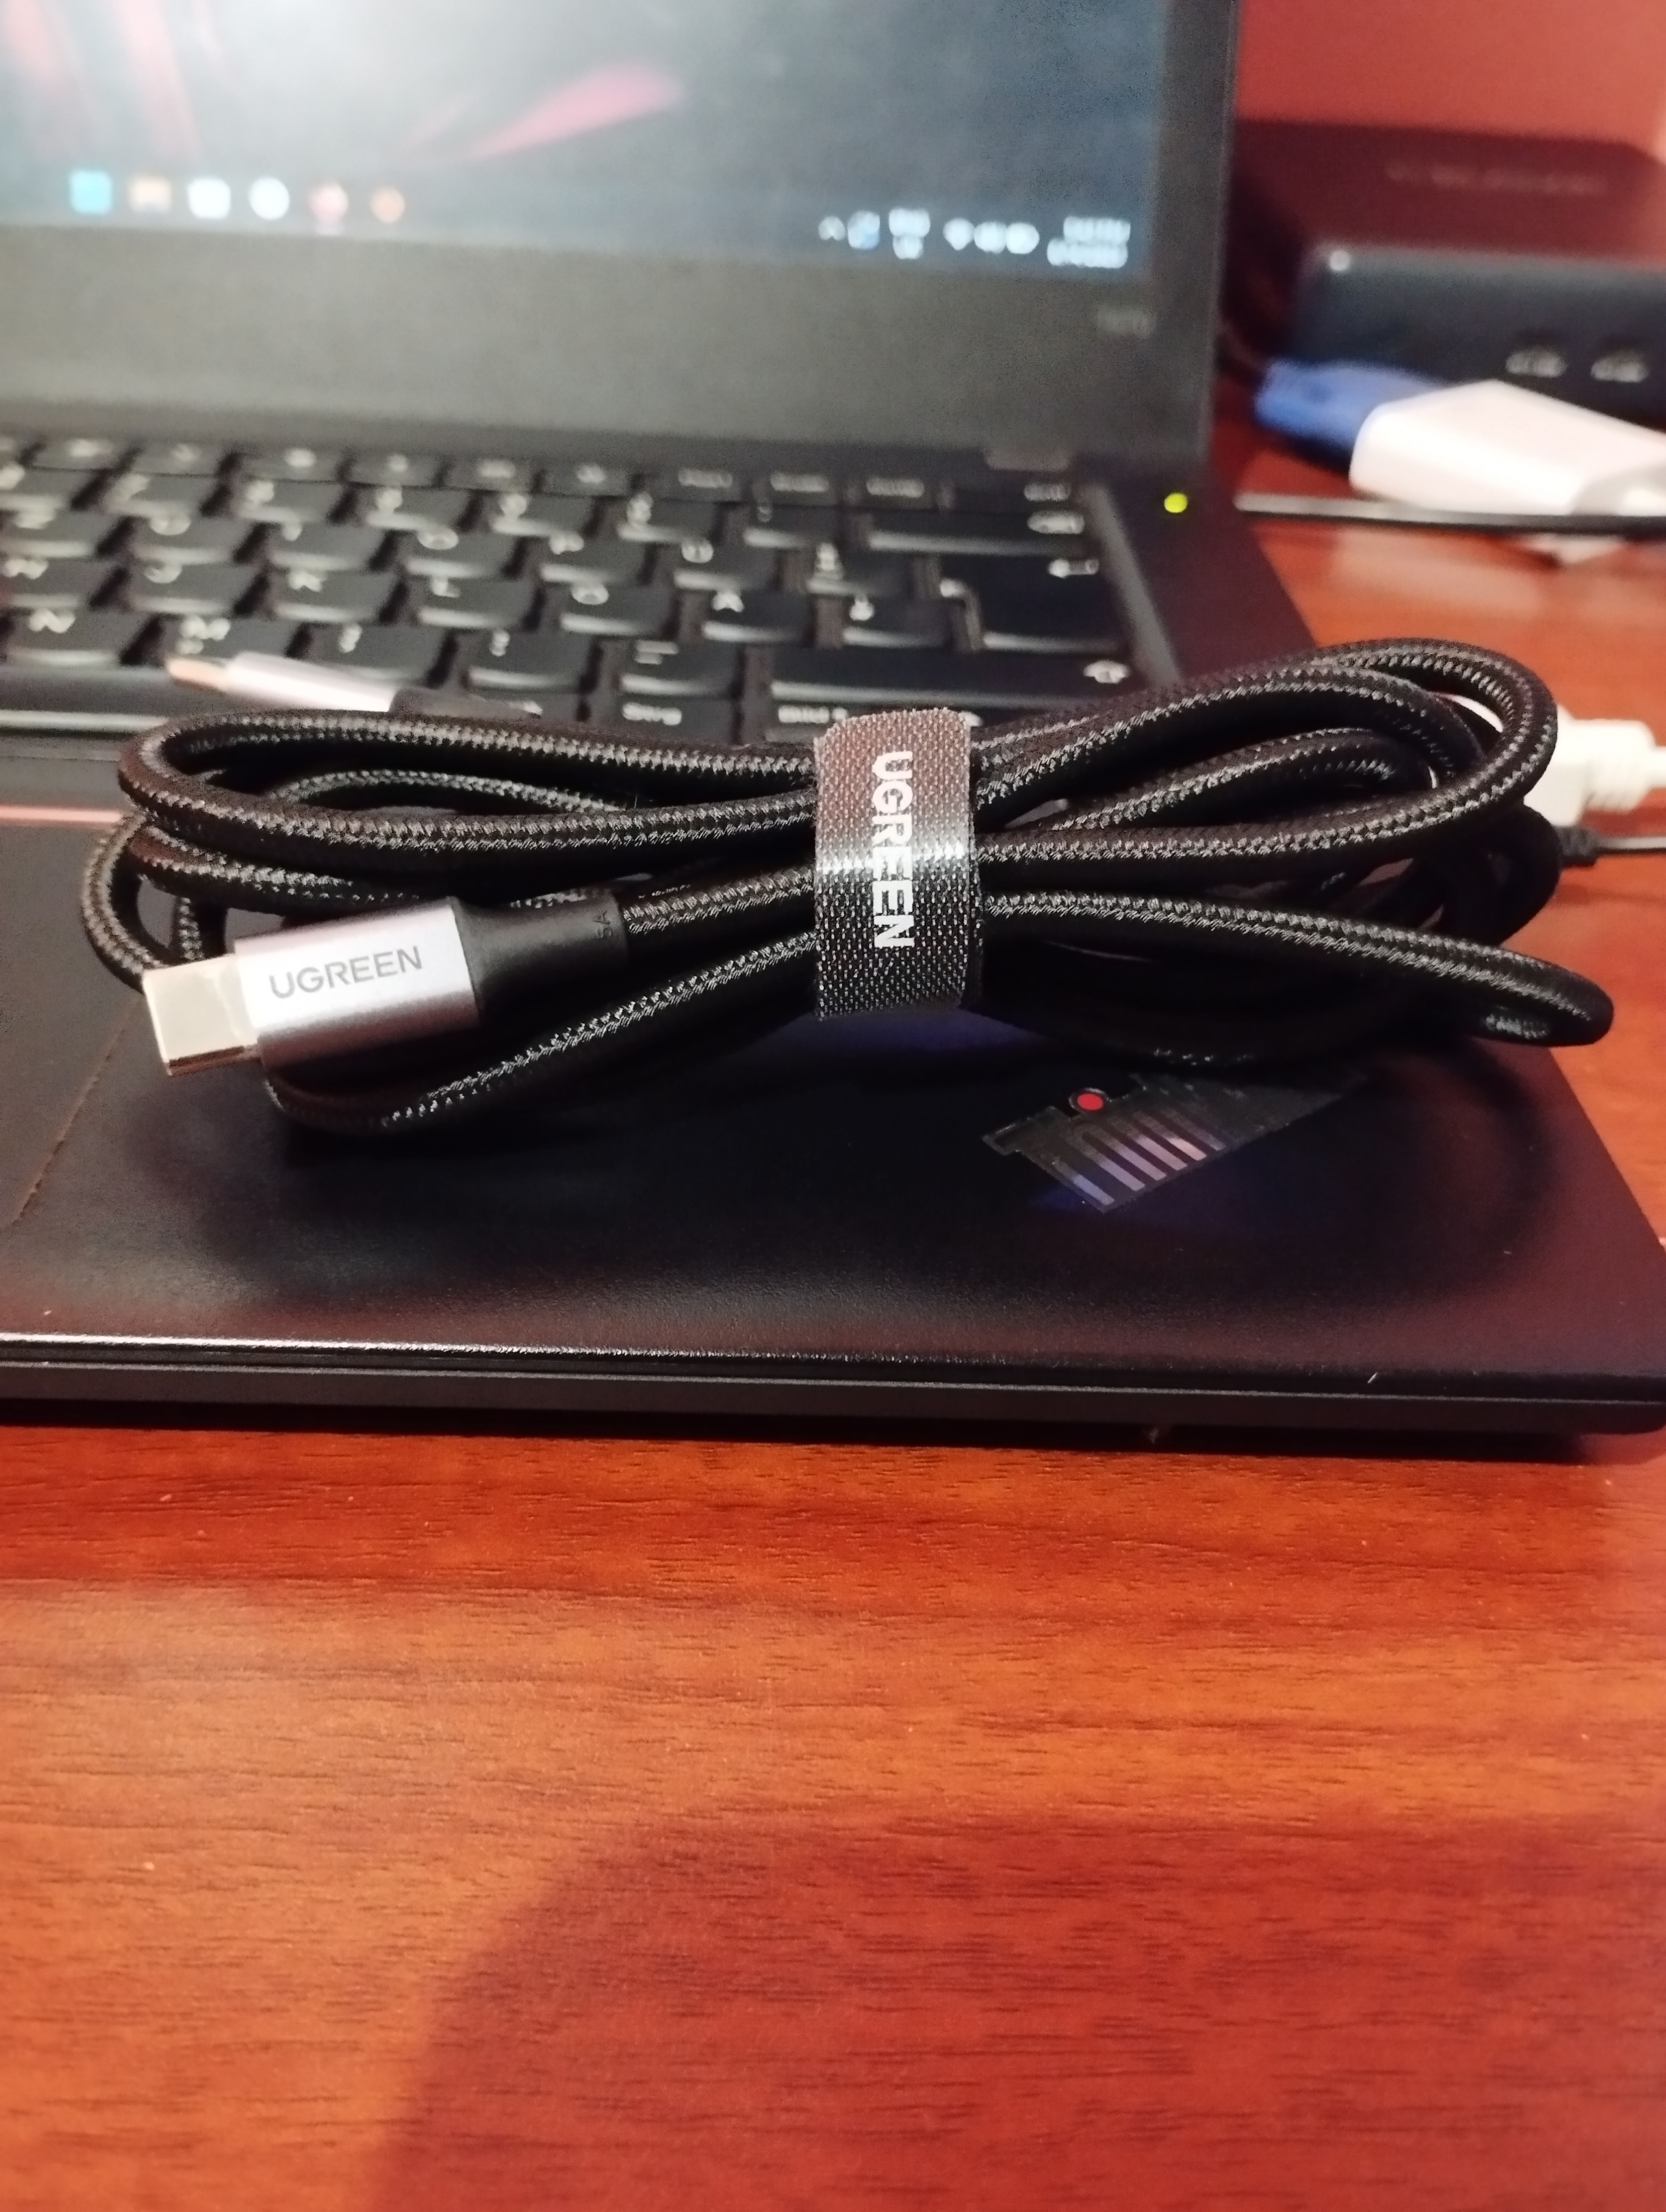 Cáp USB-C Ugreen 100W trên bàn làm việc